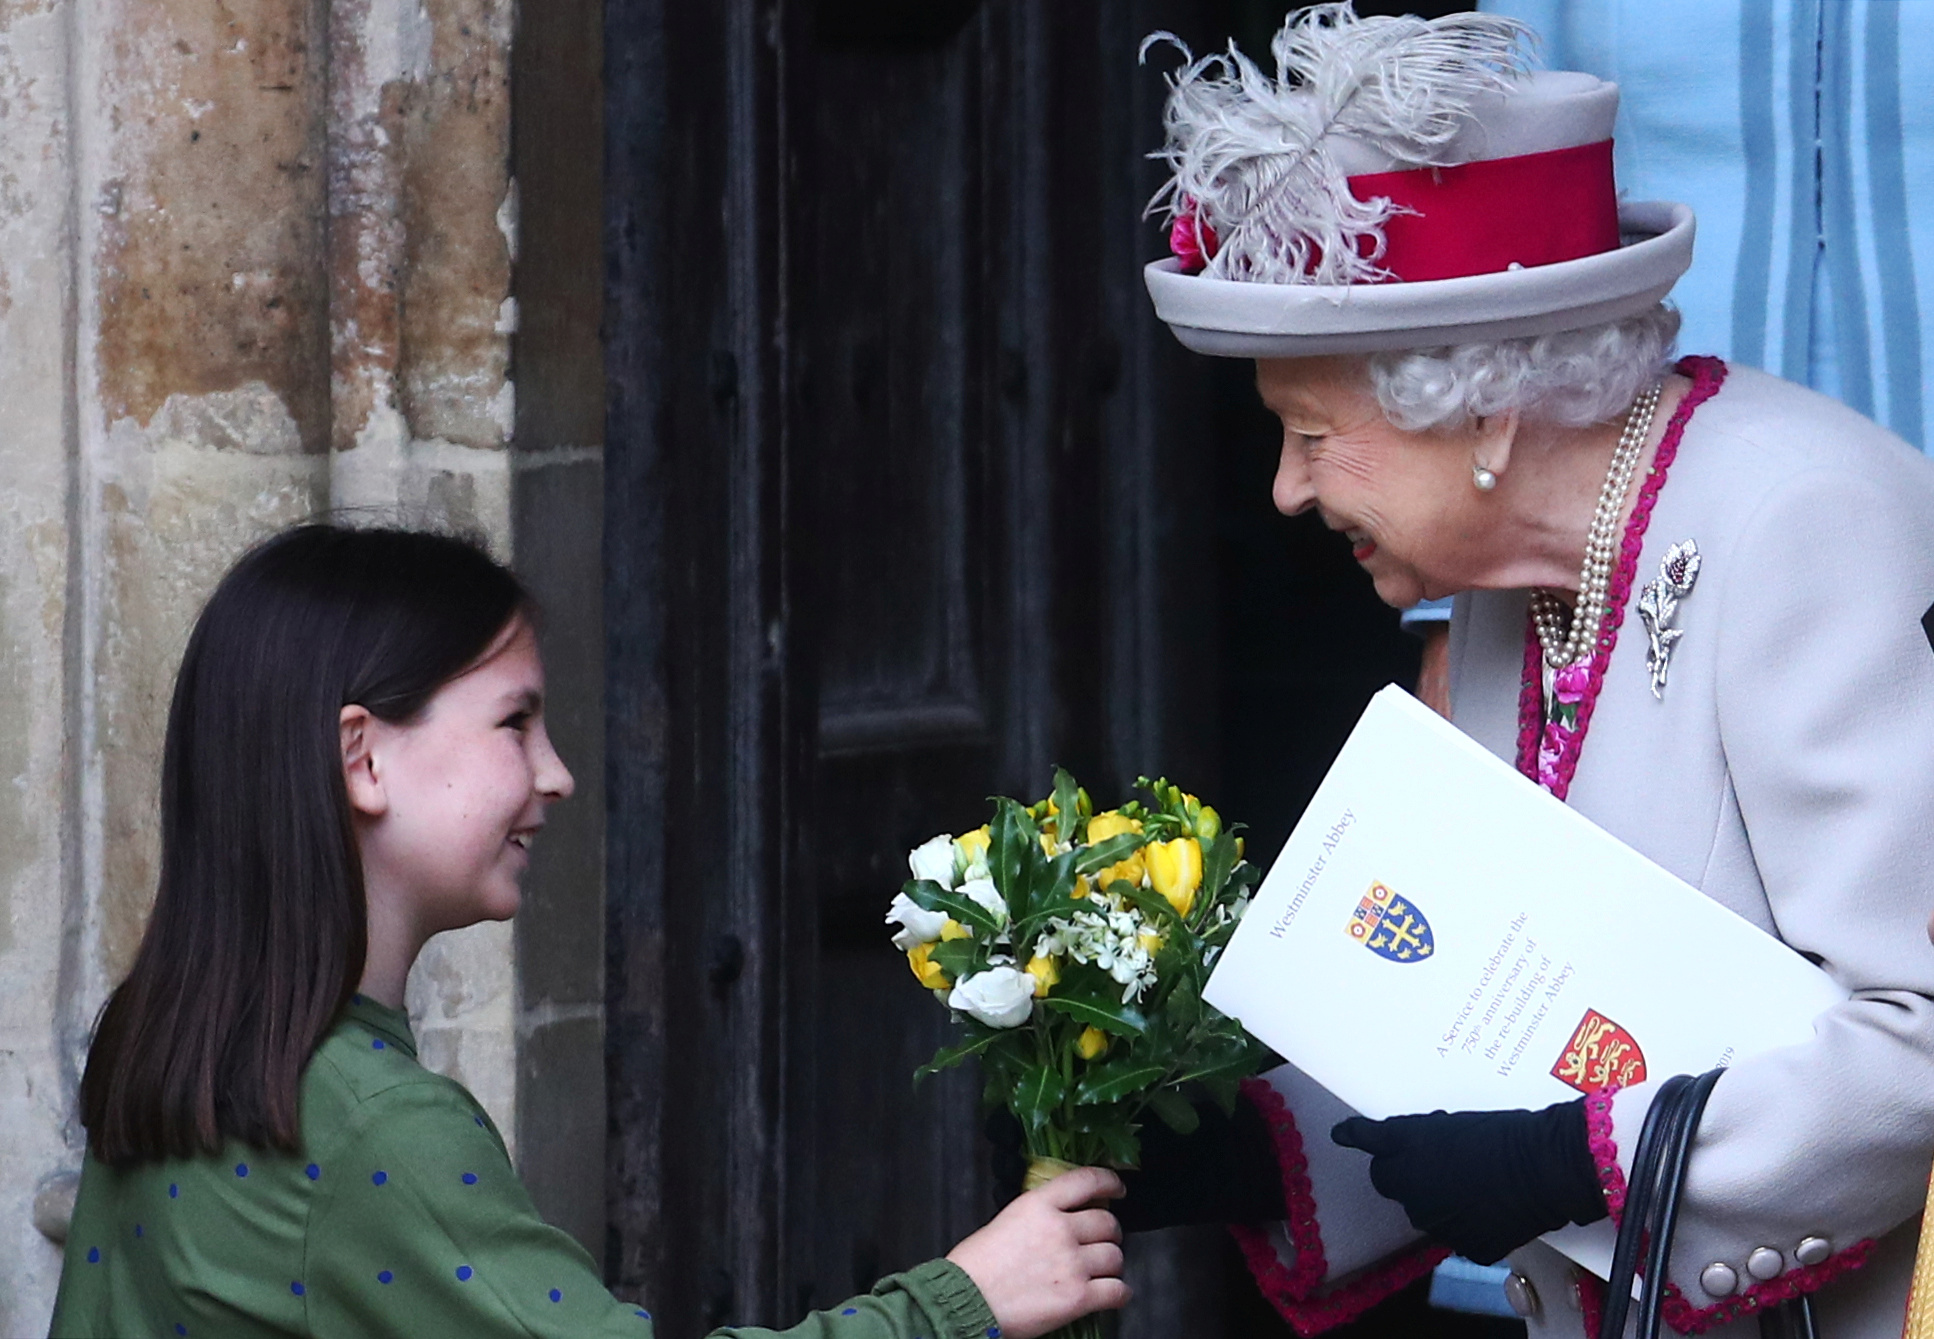 طفلة تهدى ملكة بريطانيا الزهور